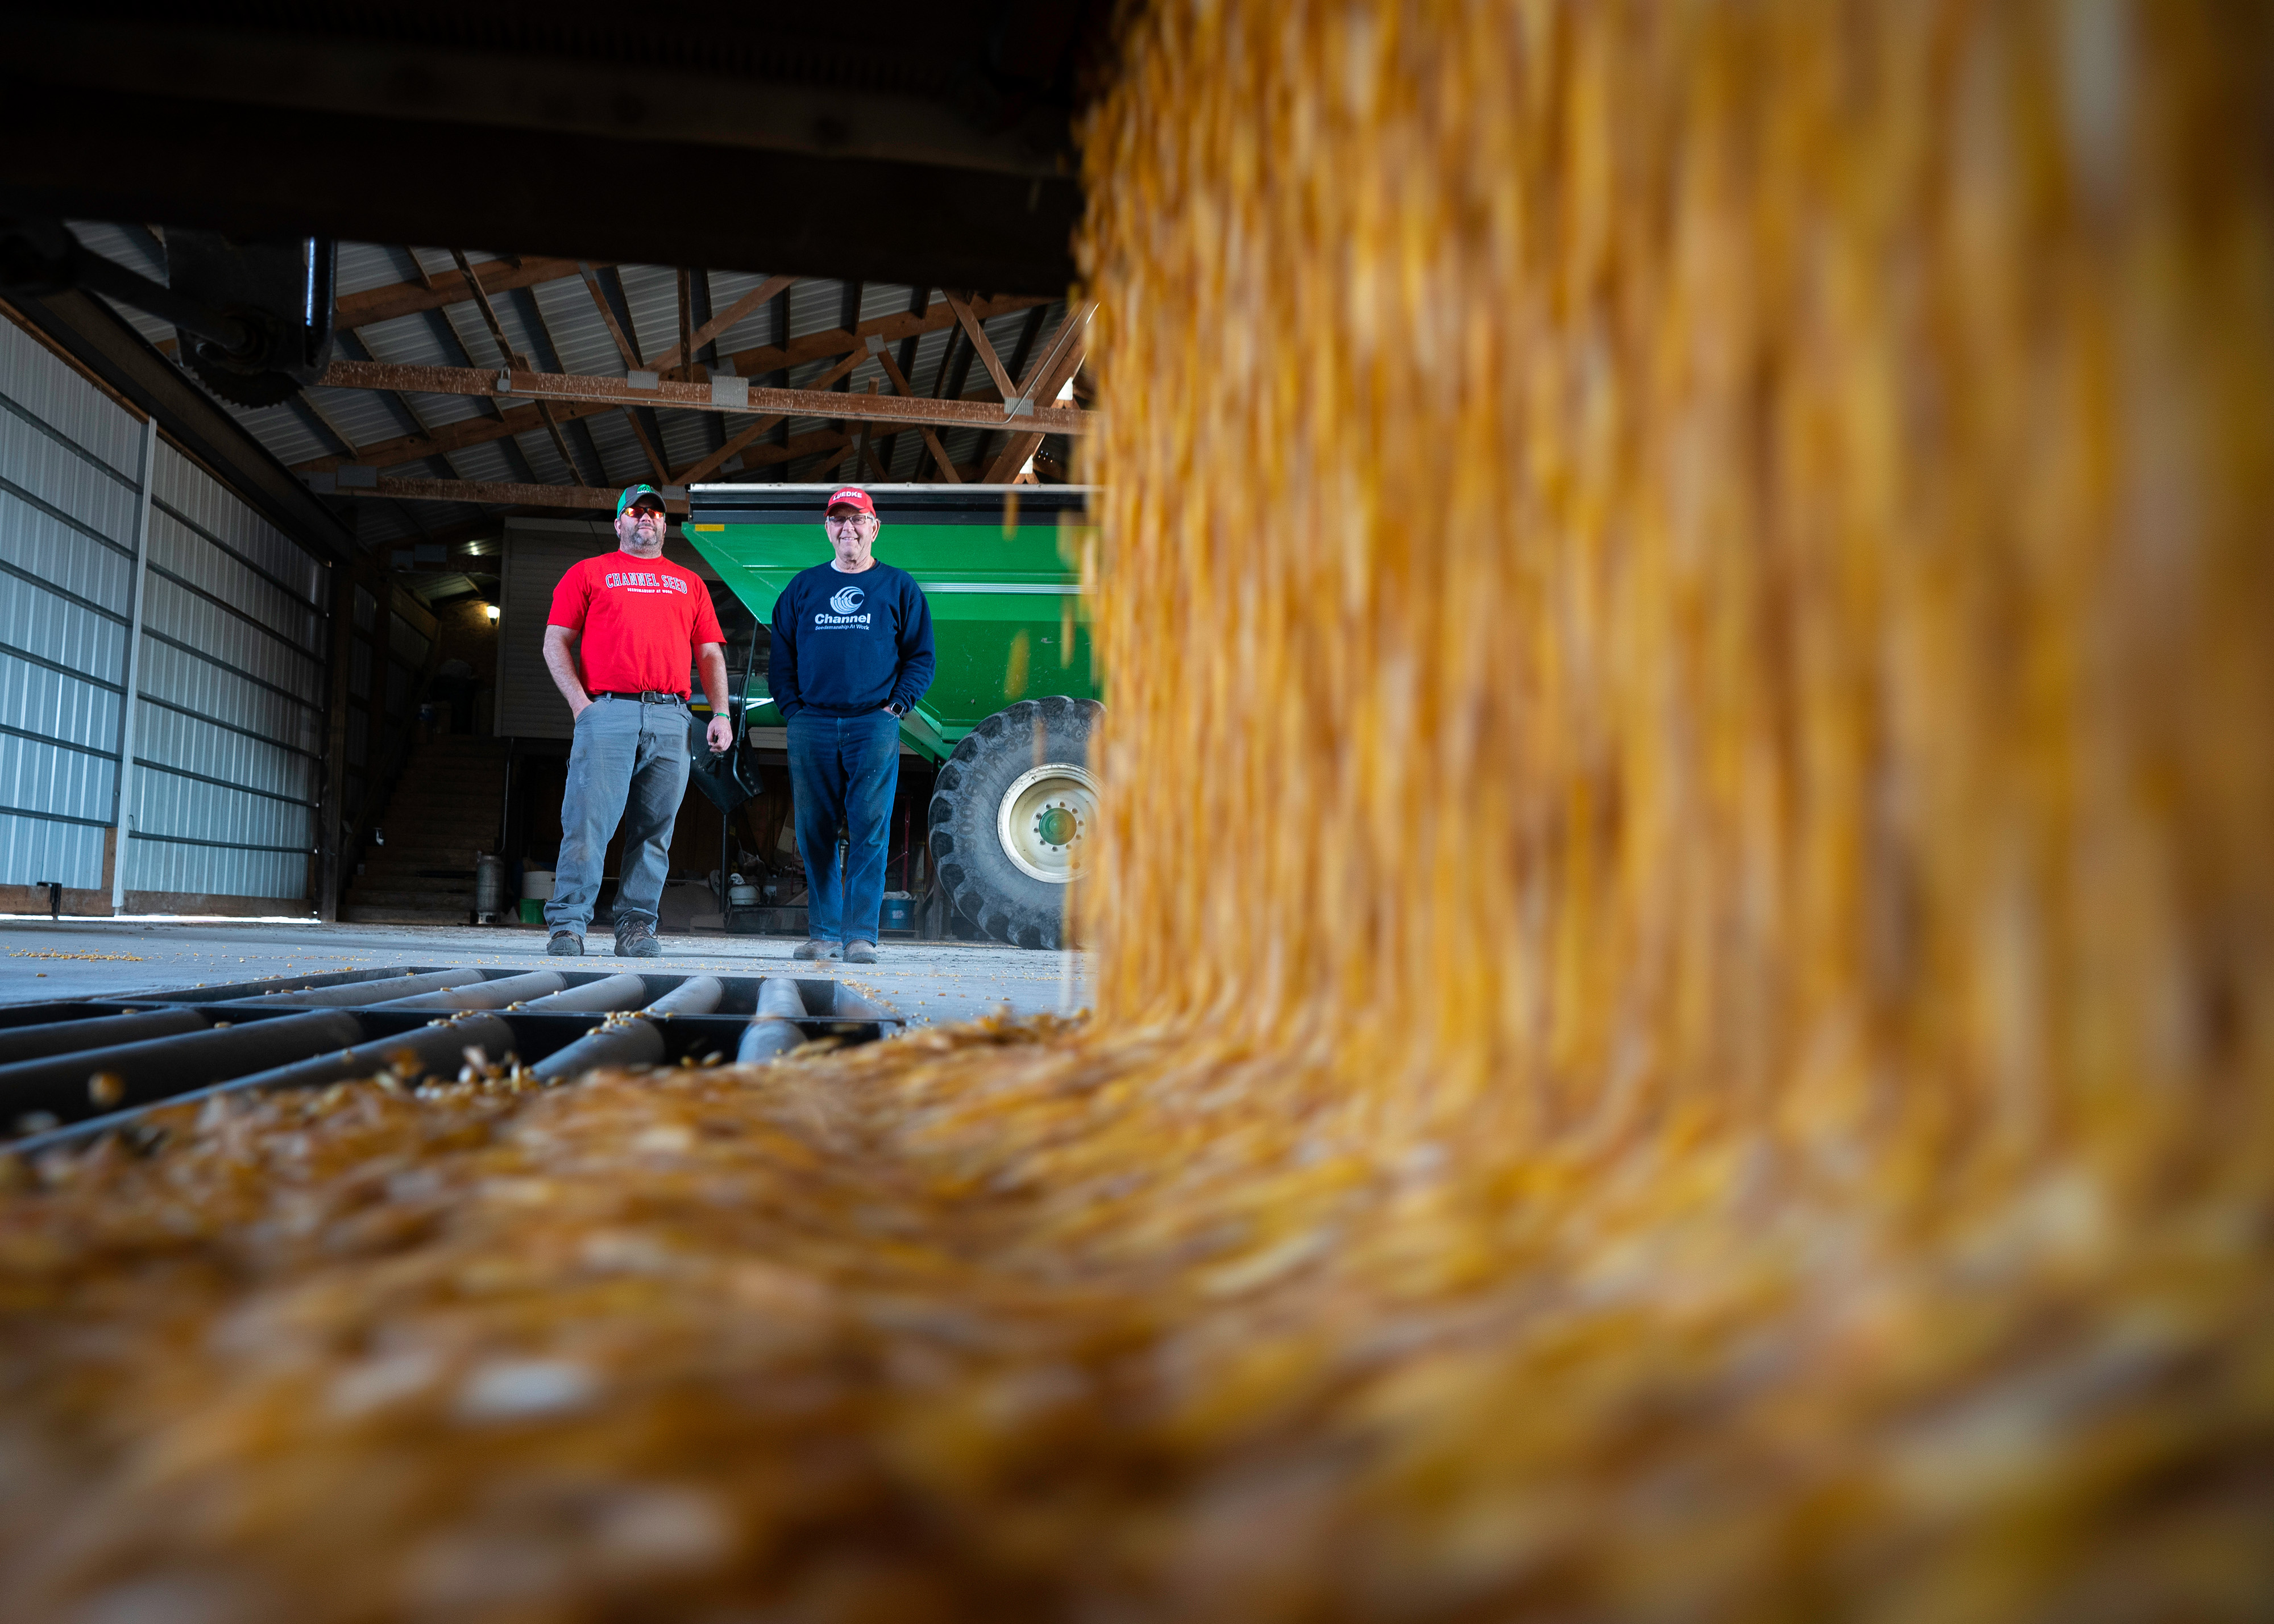 Two men watch corn kernels rushing into a floor bin.